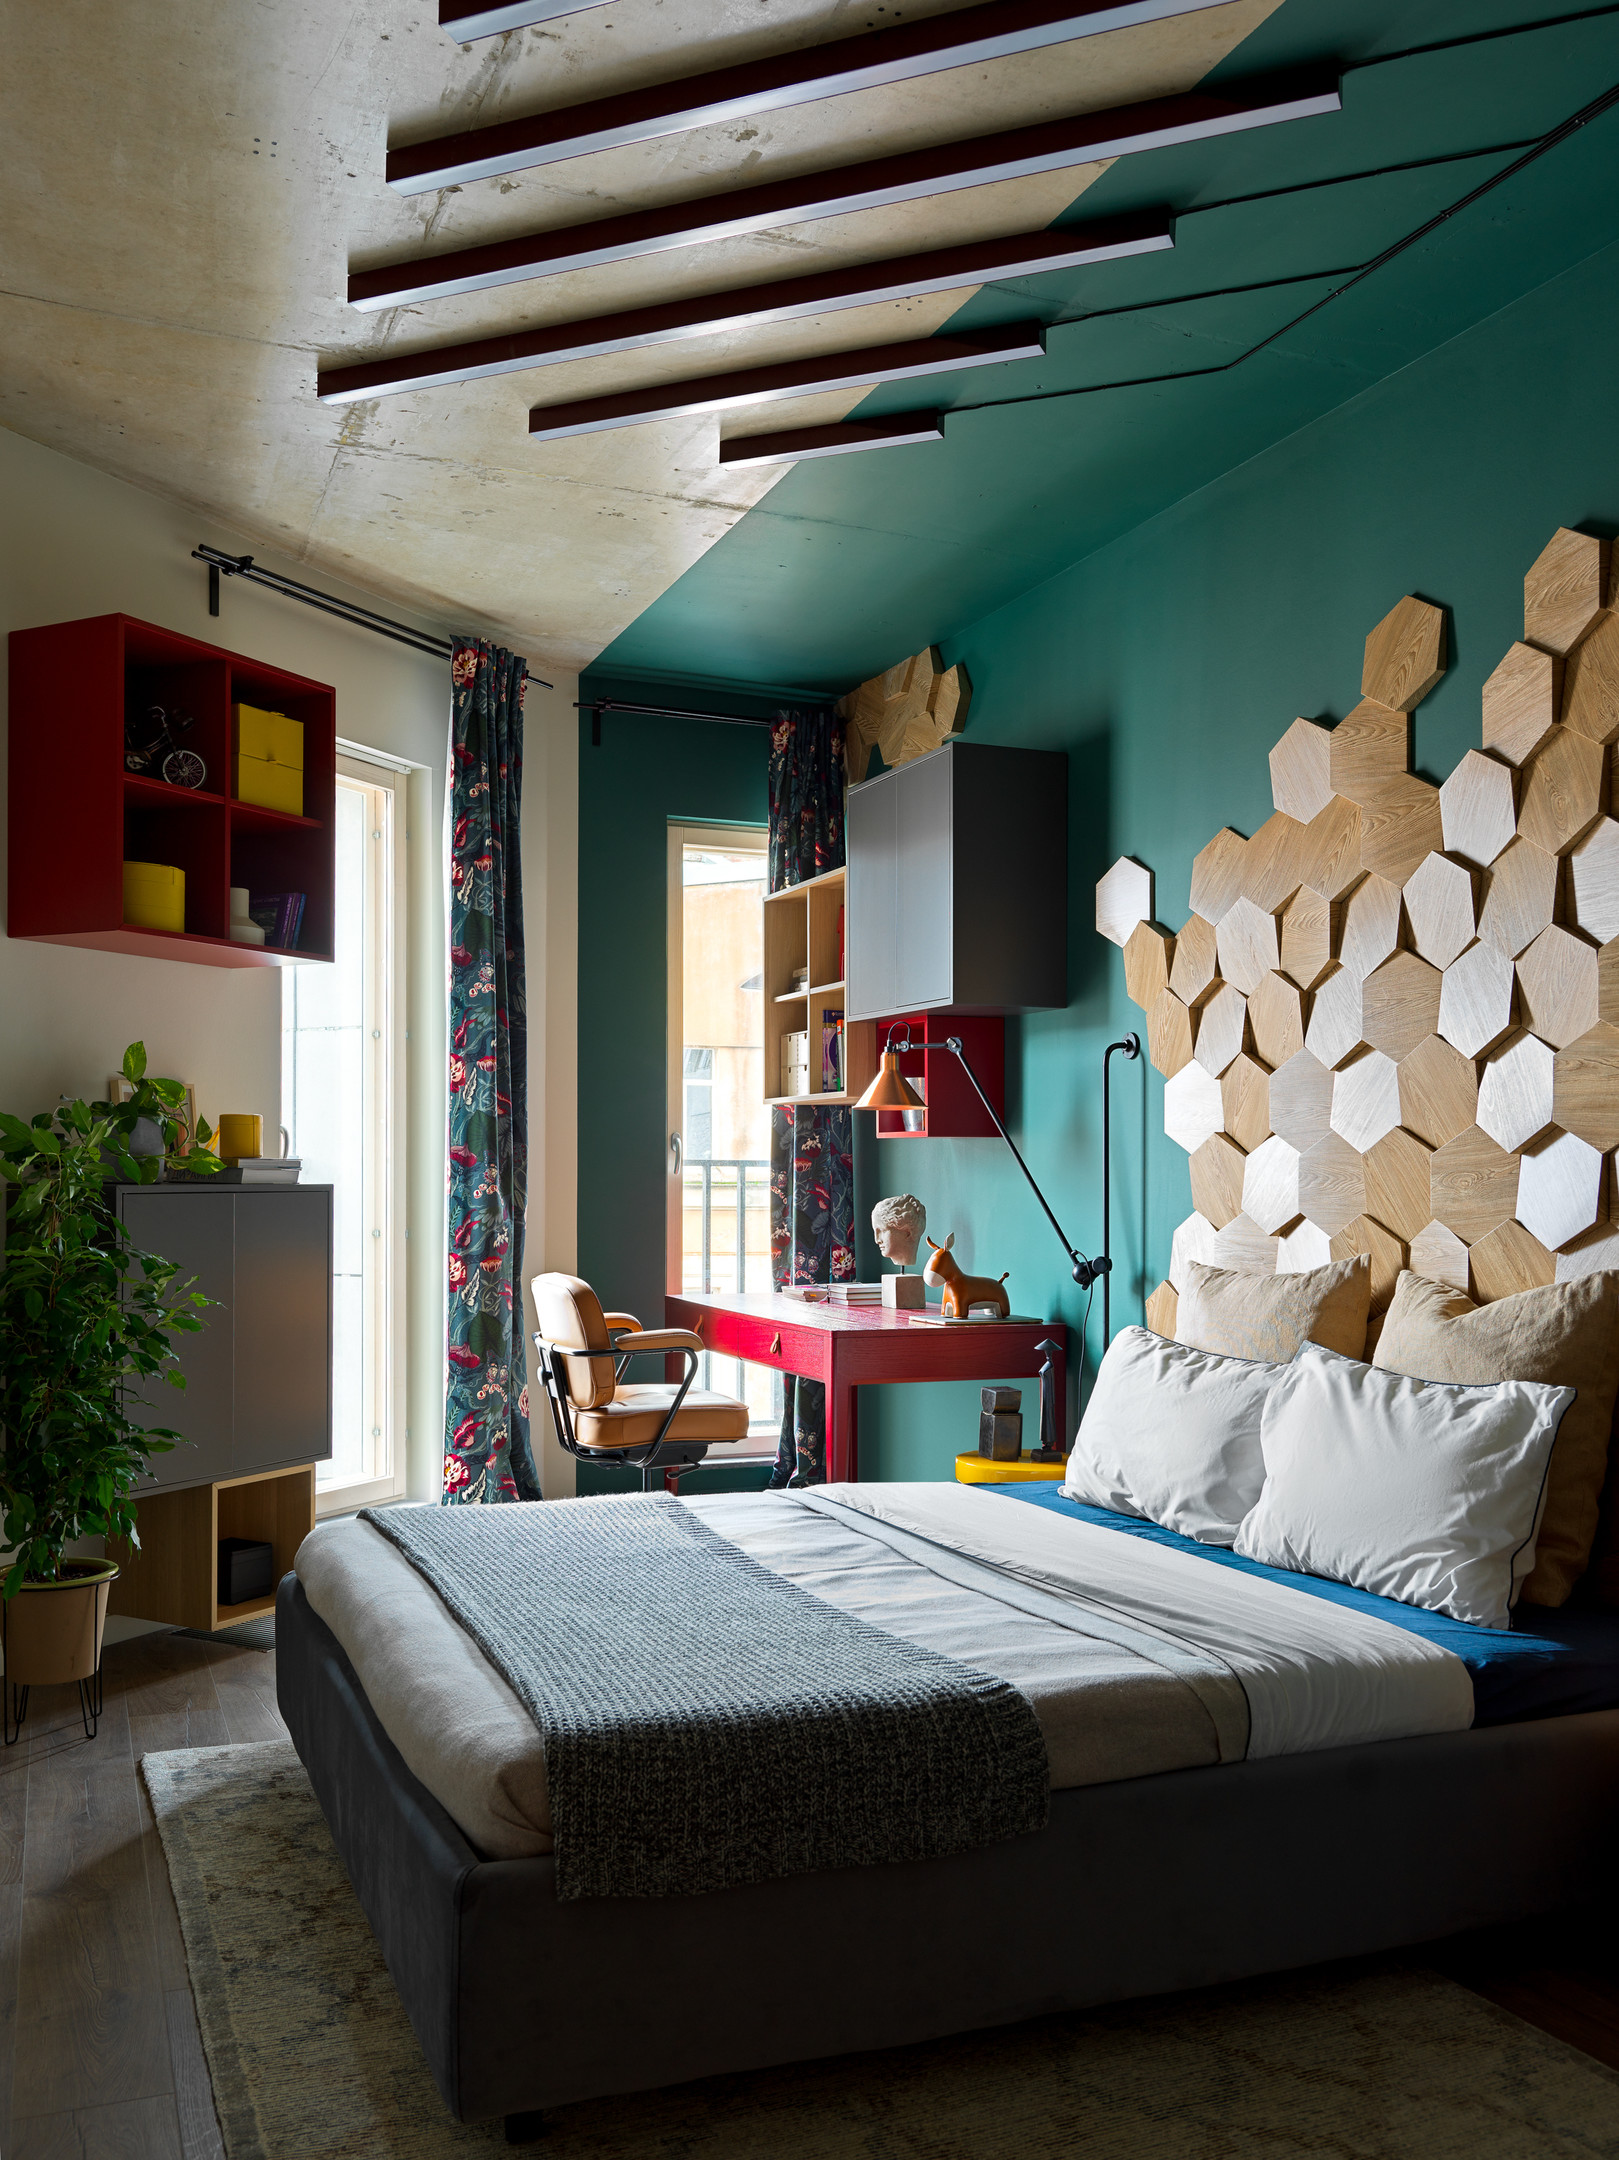 Phòng ngủ chính thiết kế độc đáo, đúng chất của phong cách chiết trung với nền tường màu xanh ngọc lục bảo, kệ mở và tủ kín kết hợp cùng nhau để tối ưu hóa không gian lưu trữ trên tường, và dĩ nhiên cũng không thiếu được sắc xanh cây cảnh.